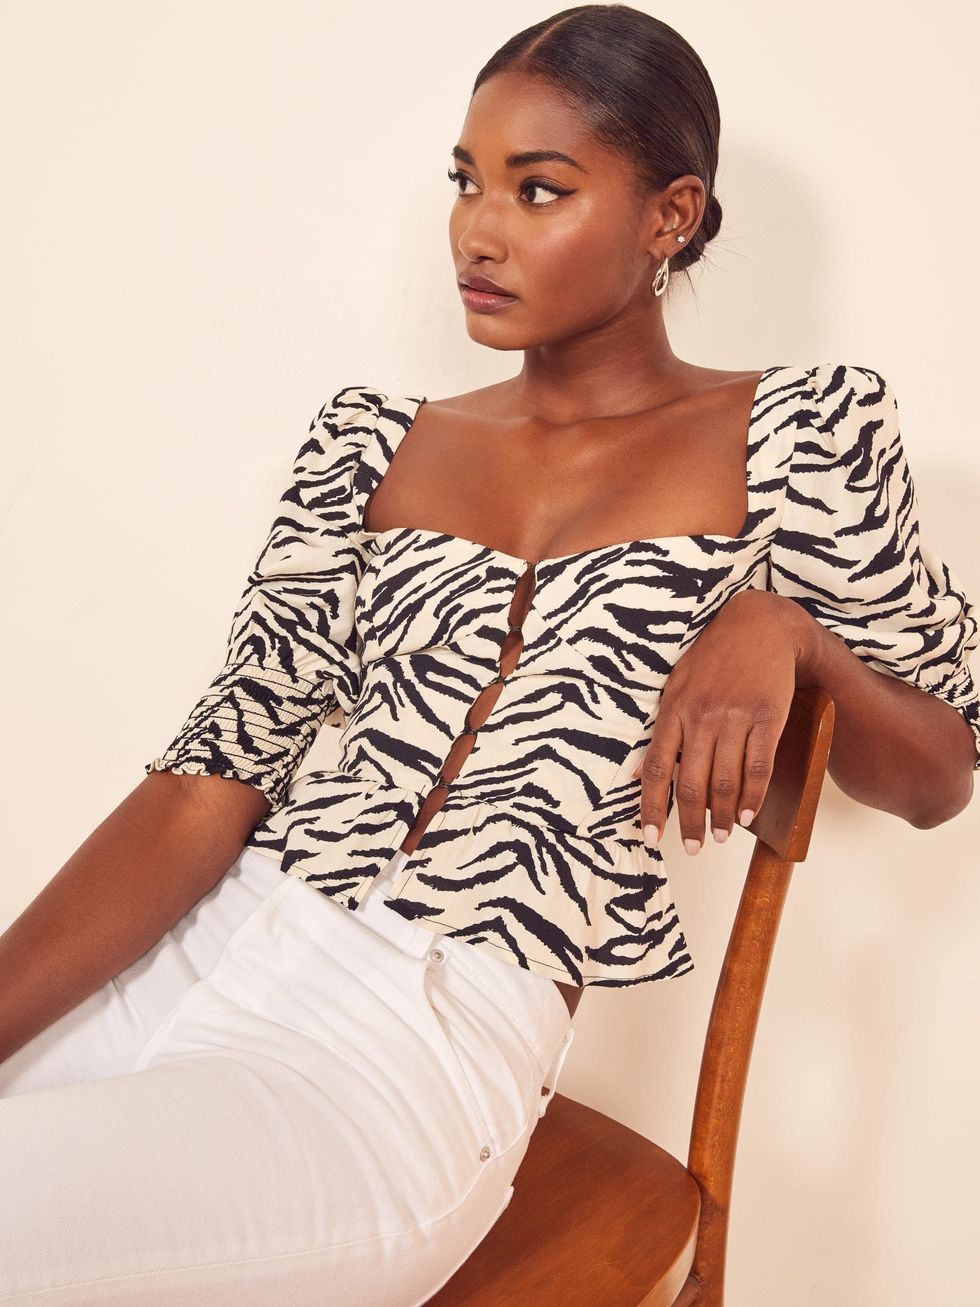 21 Ways to Wild Up Your Wardrobe With Zebra Print - Brit + Co